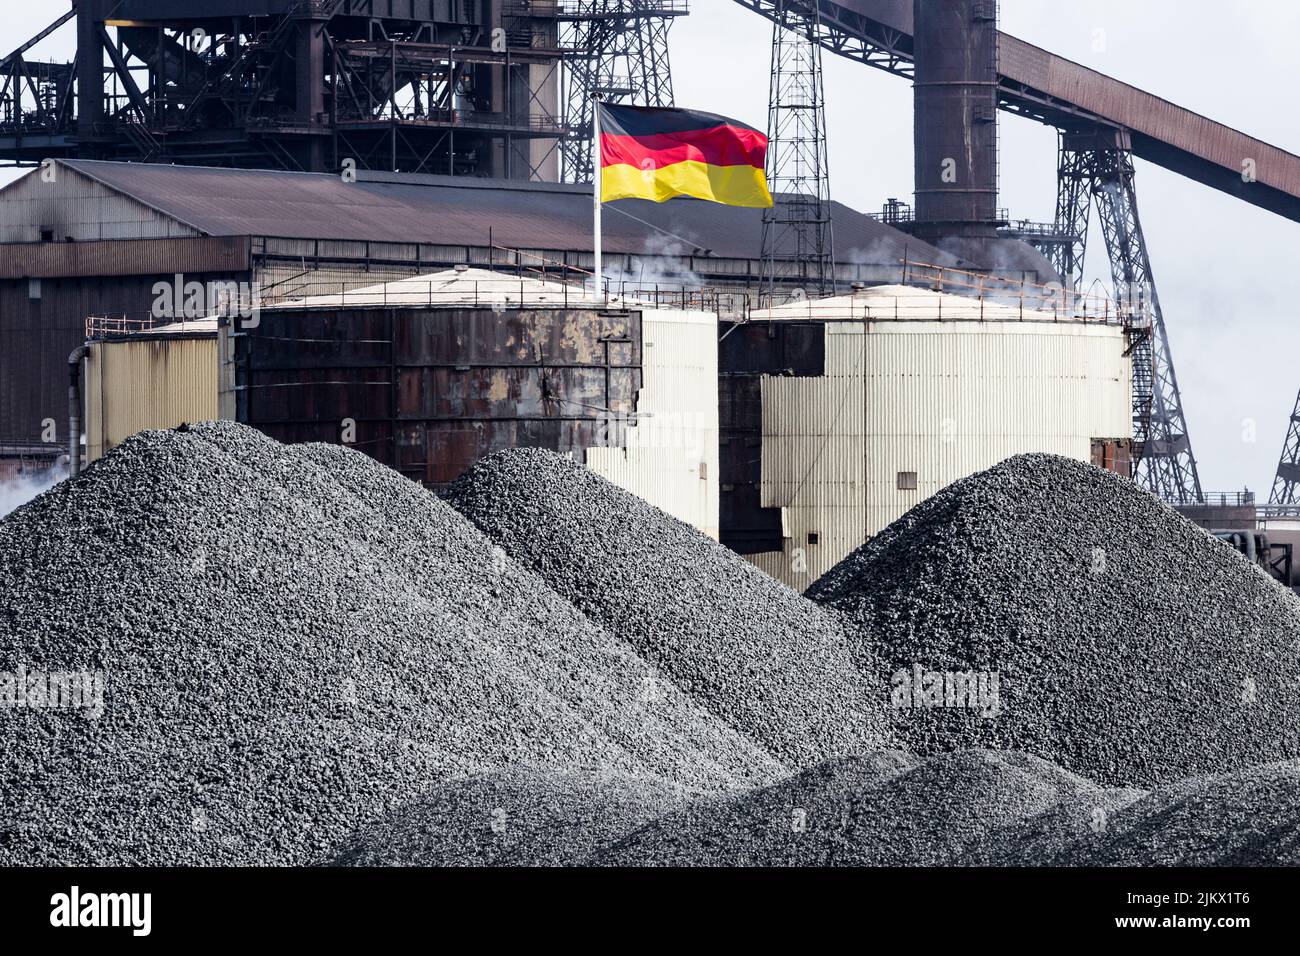 Flagge Deutschlands mit Kohle/Koks im Vordergrund. Fossile Brennstoffe, Kohle, Energie, Gas, Krise, Preise, Russland, russisches Gas... Konzept Stockfoto